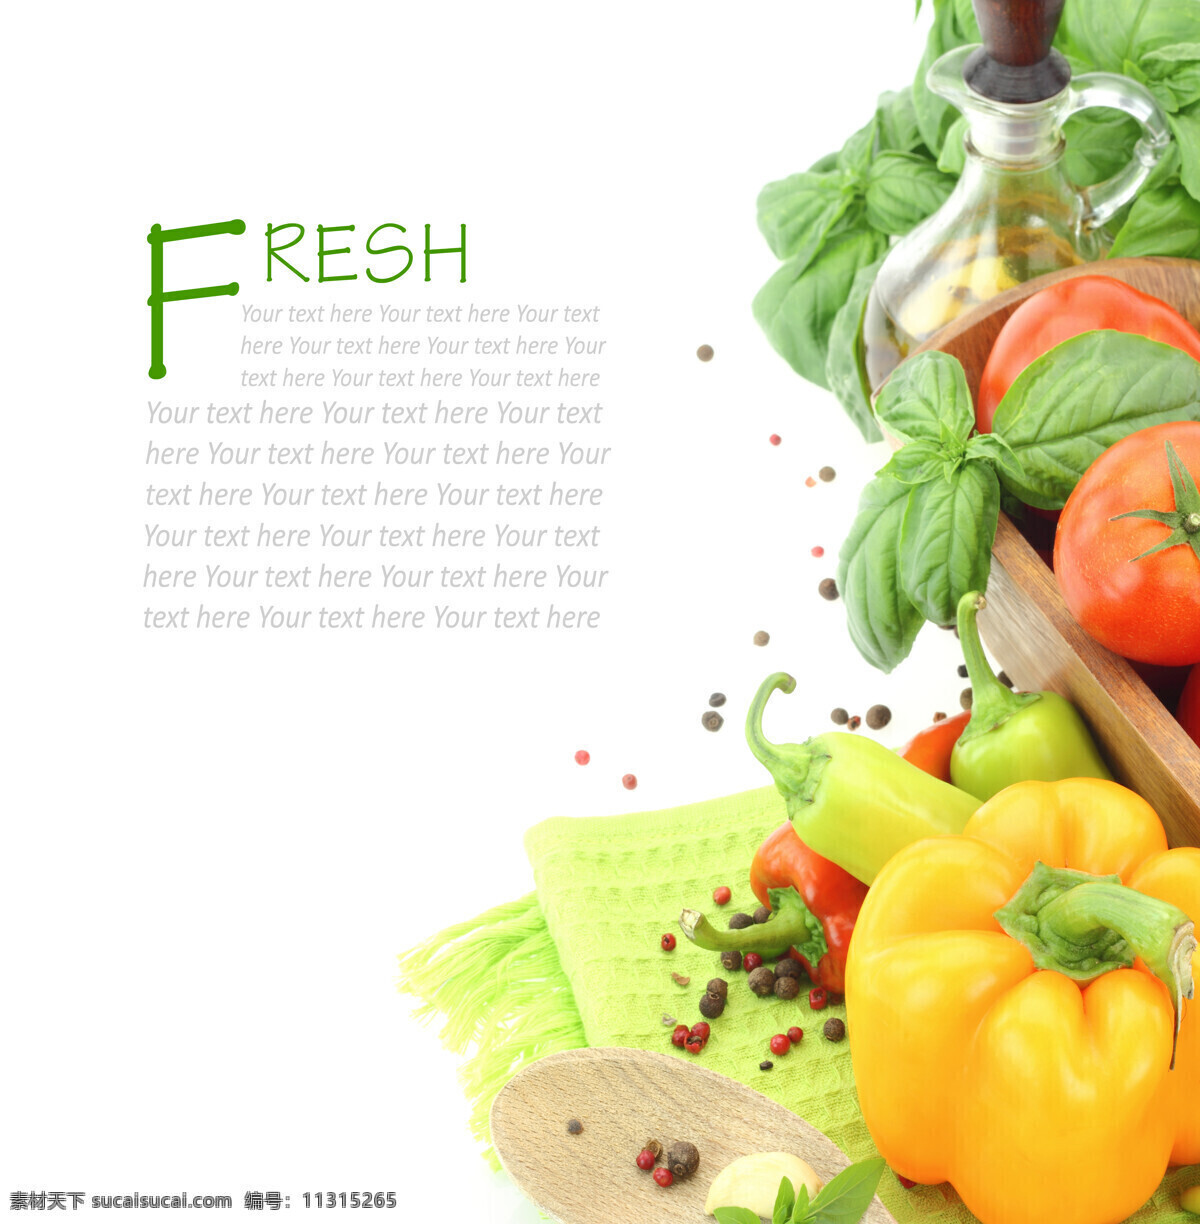 食用油 新鲜 蔬菜 辣椒 新鲜蔬菜 蔬菜摄影 绿色健康 番茄 西红柿 水果蔬菜 餐饮美食 白色